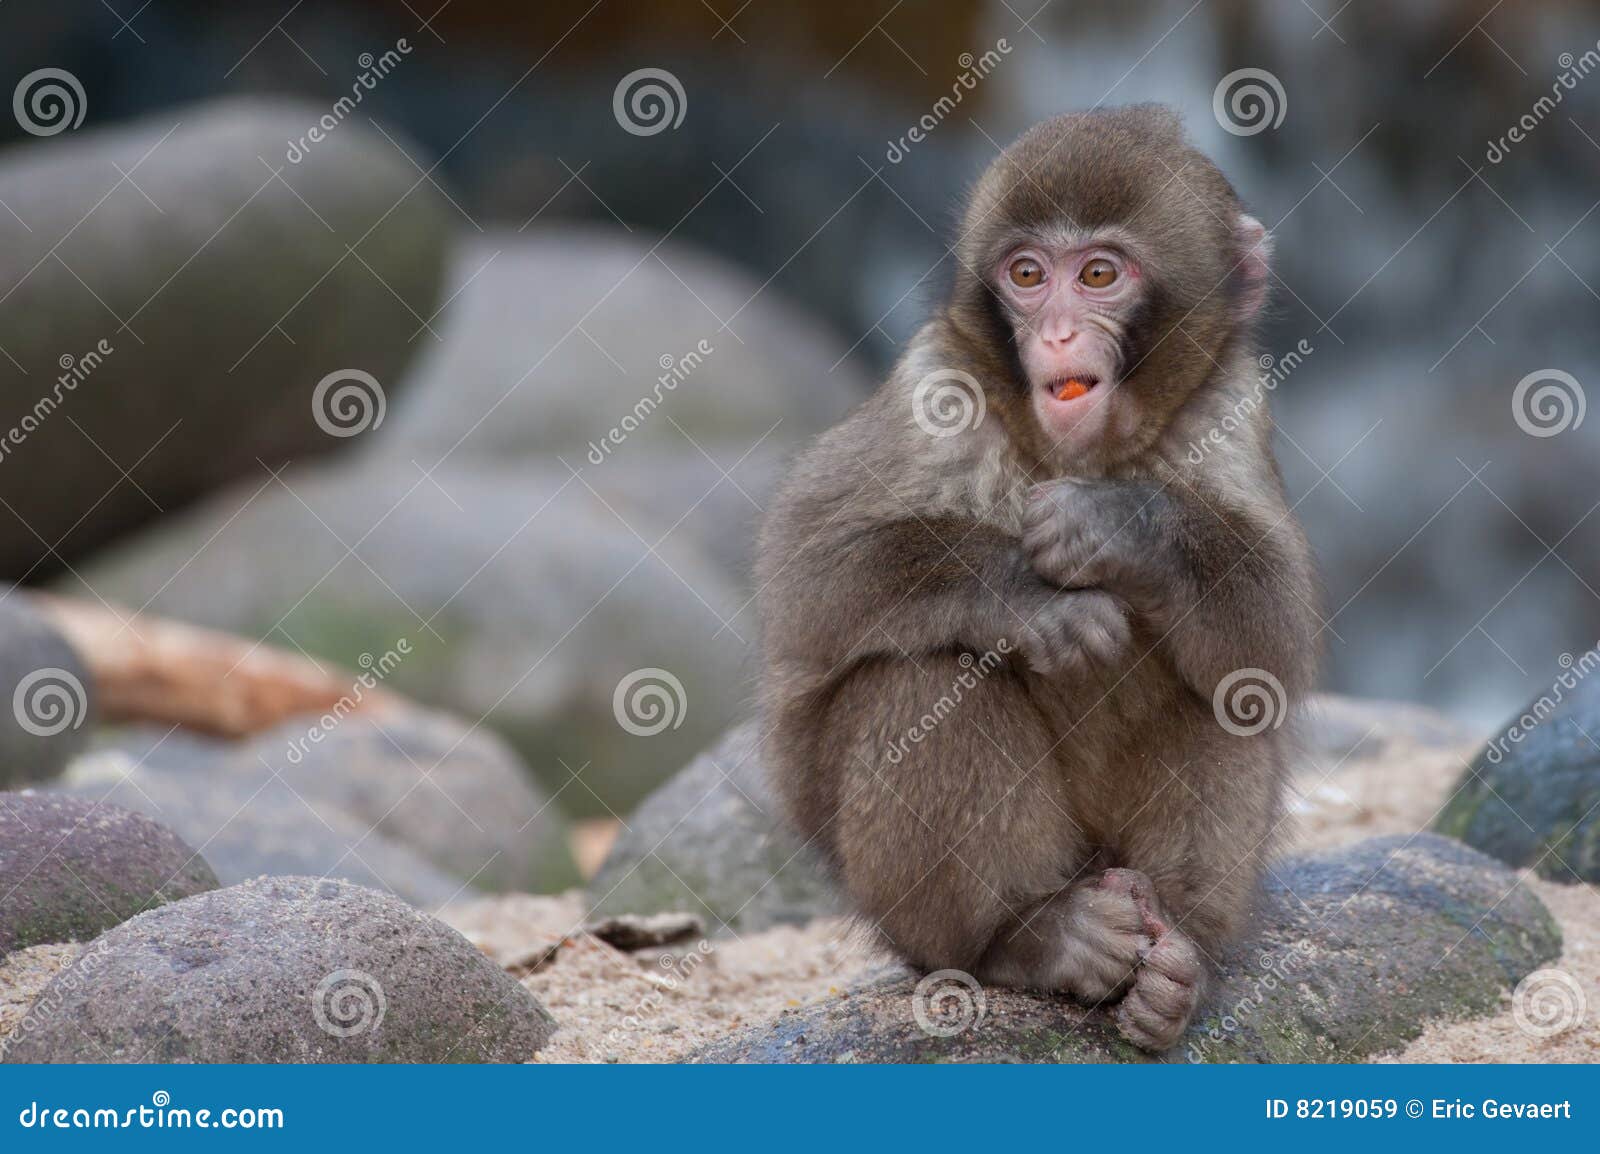 Funny monkey stock image. Image of close, animal, food - 8219059